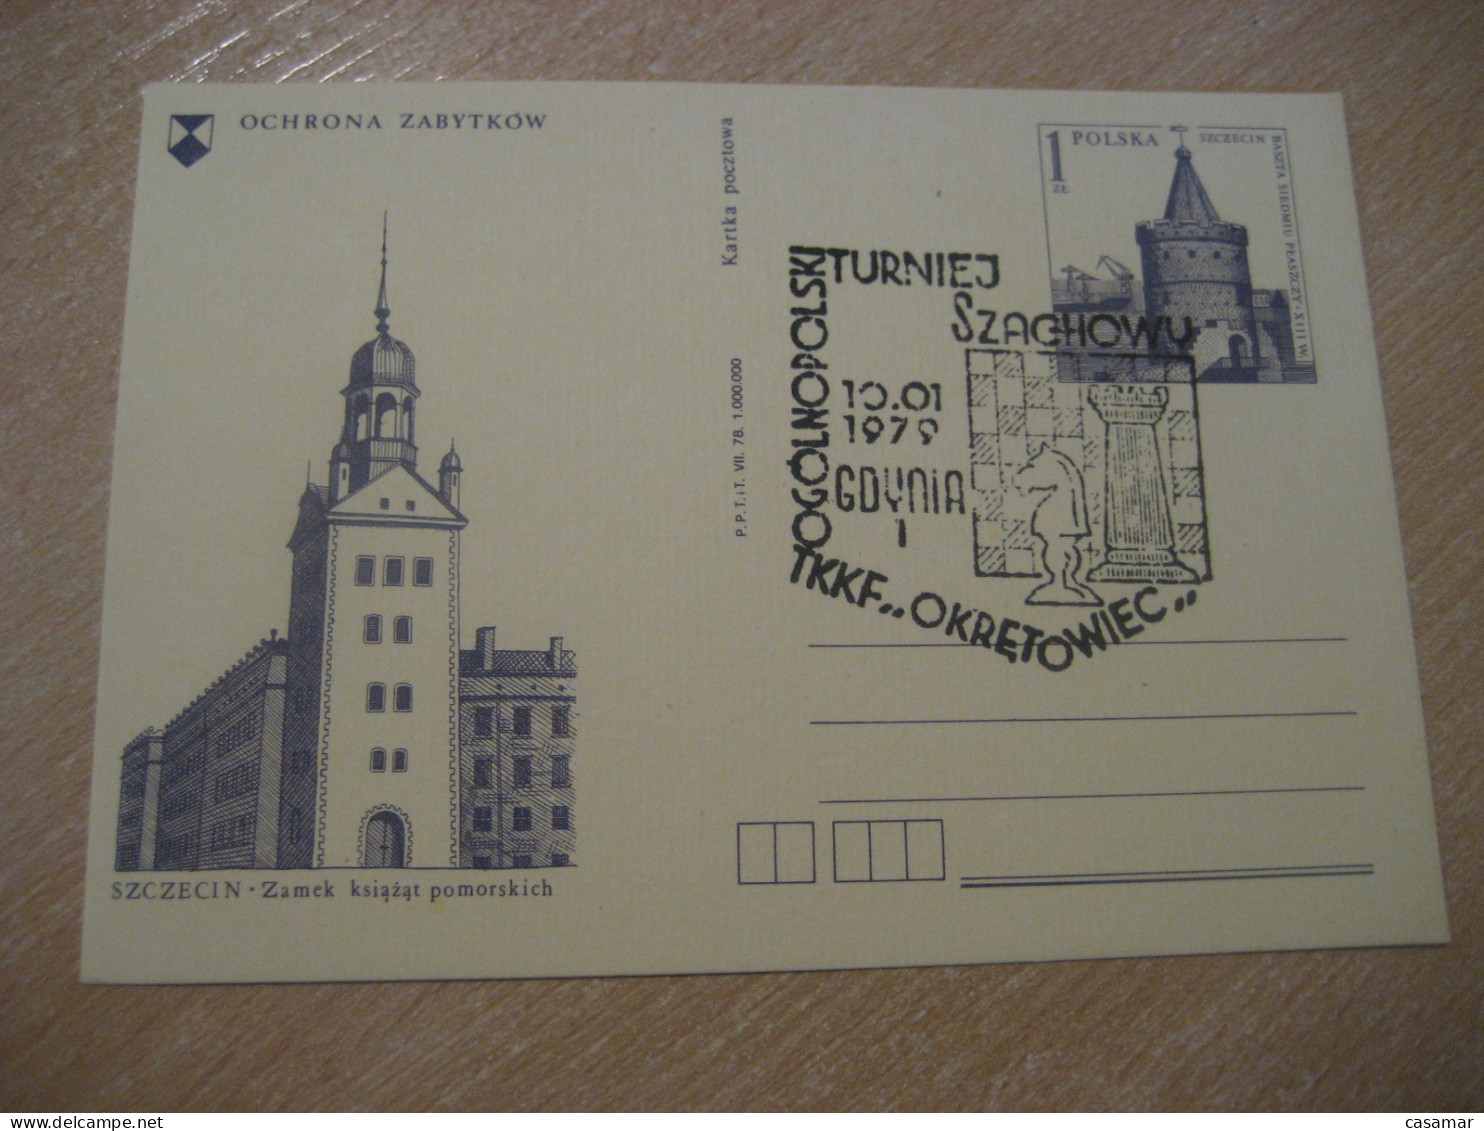 GDYNIA 1979 Chess Echecs Ajedrez Cancel Postal Stationery Card POLAND - Scacchi